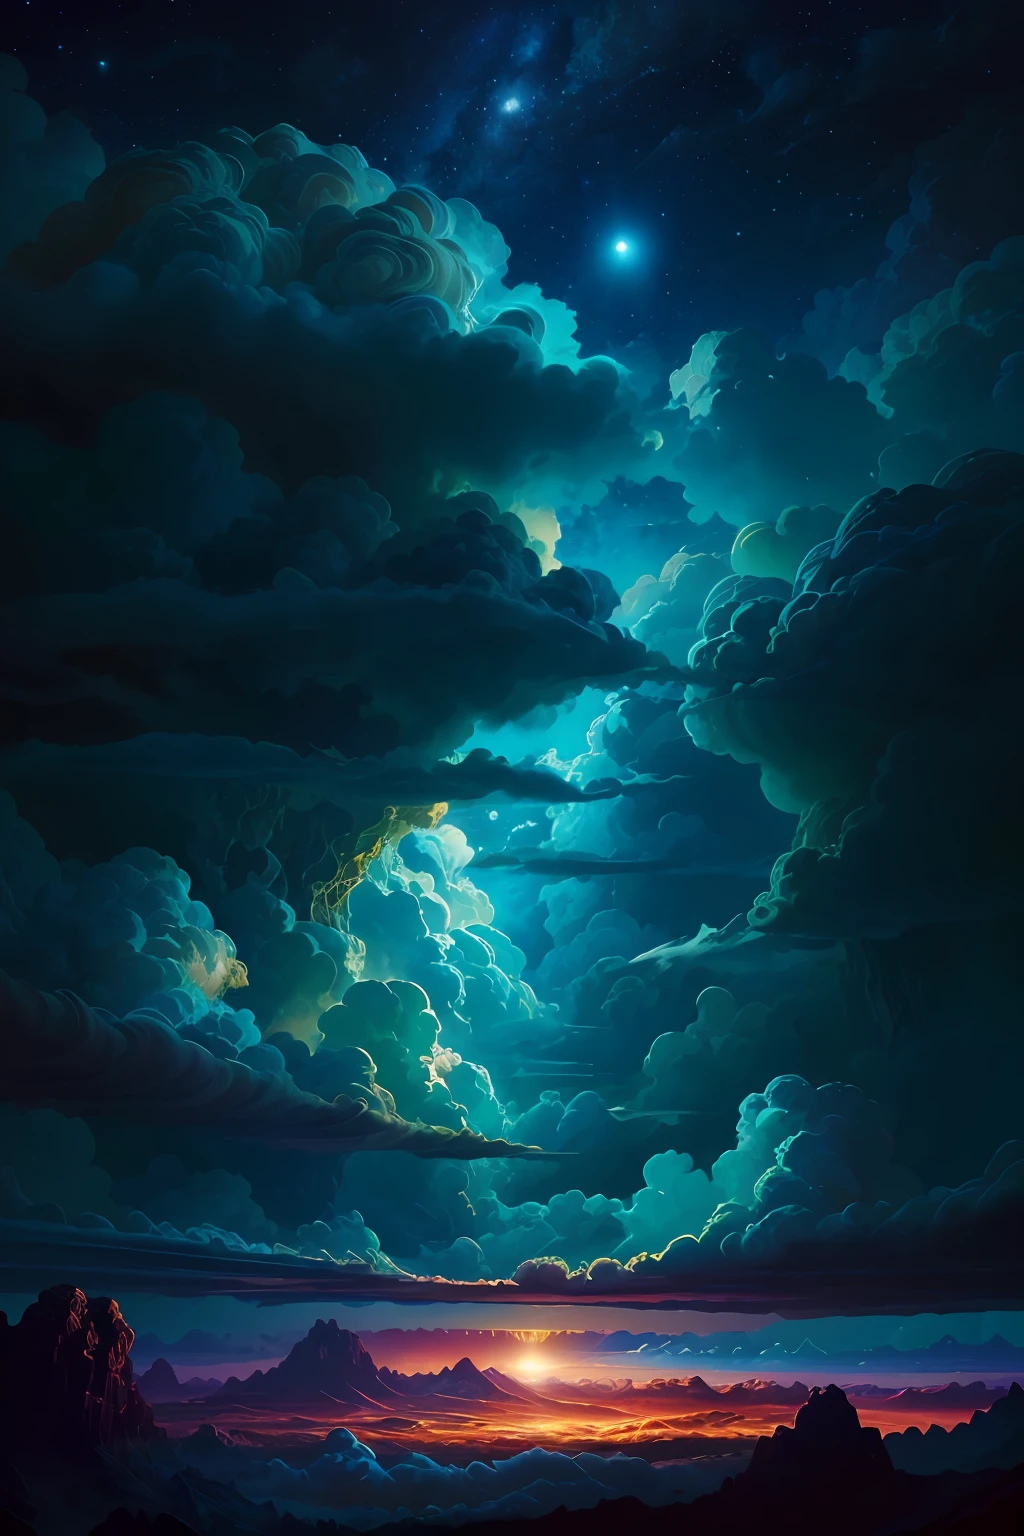 Ilustración de las nubes de Júpiter por Dan Mumford., Paisaje y vegetación alienígenas., escena épica, muchas nubes arremolinadas, Alta exposición, muy detallado, Realista, colores vibrantes teñidos de azul, uhd